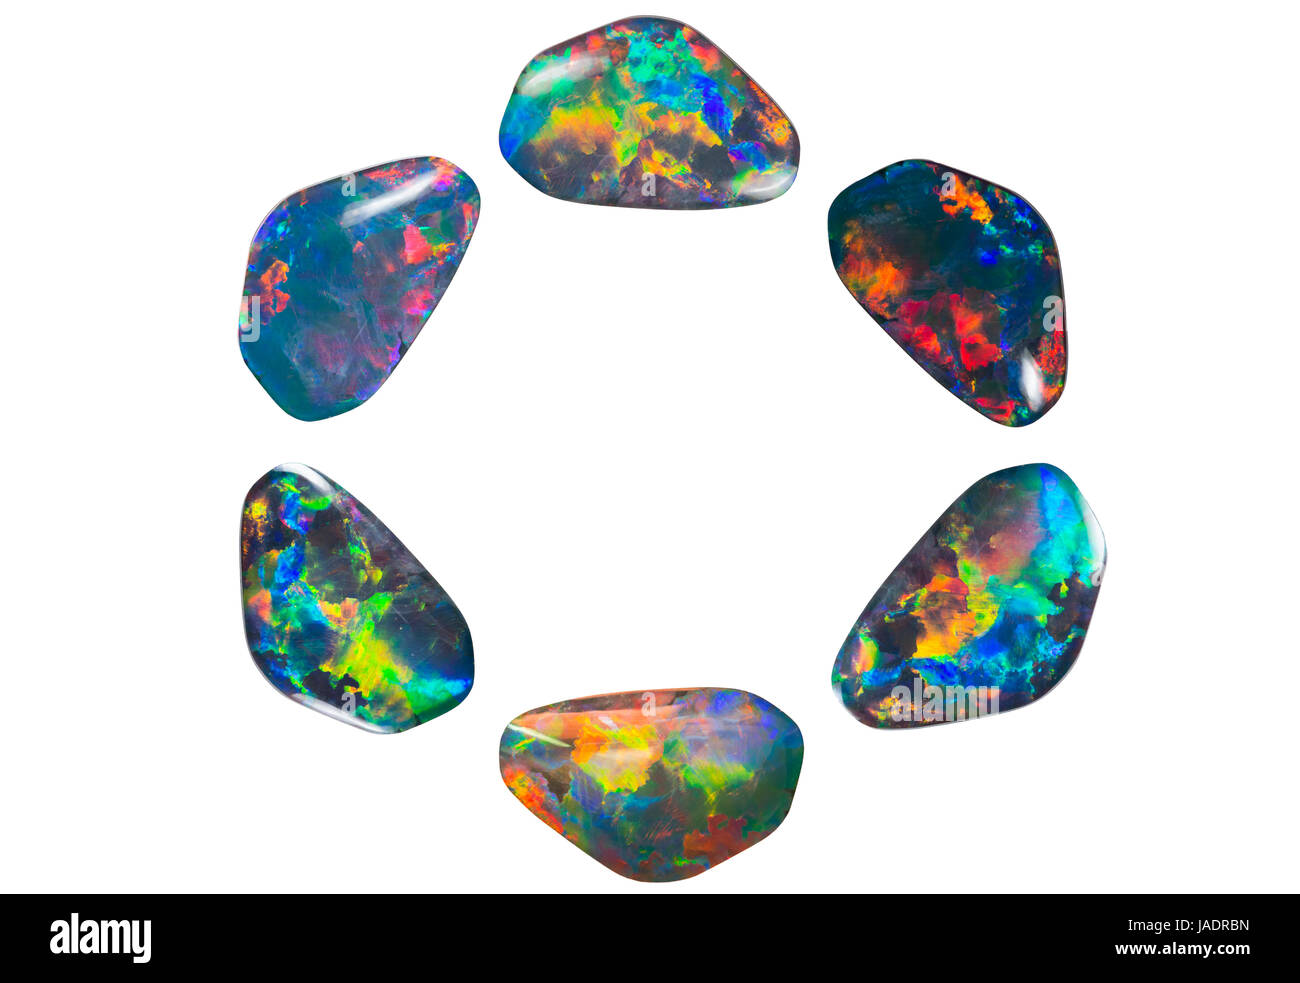 Ein Kreis aus freigestellten Opalen mit komplettem Farbspektrum Foto Stock